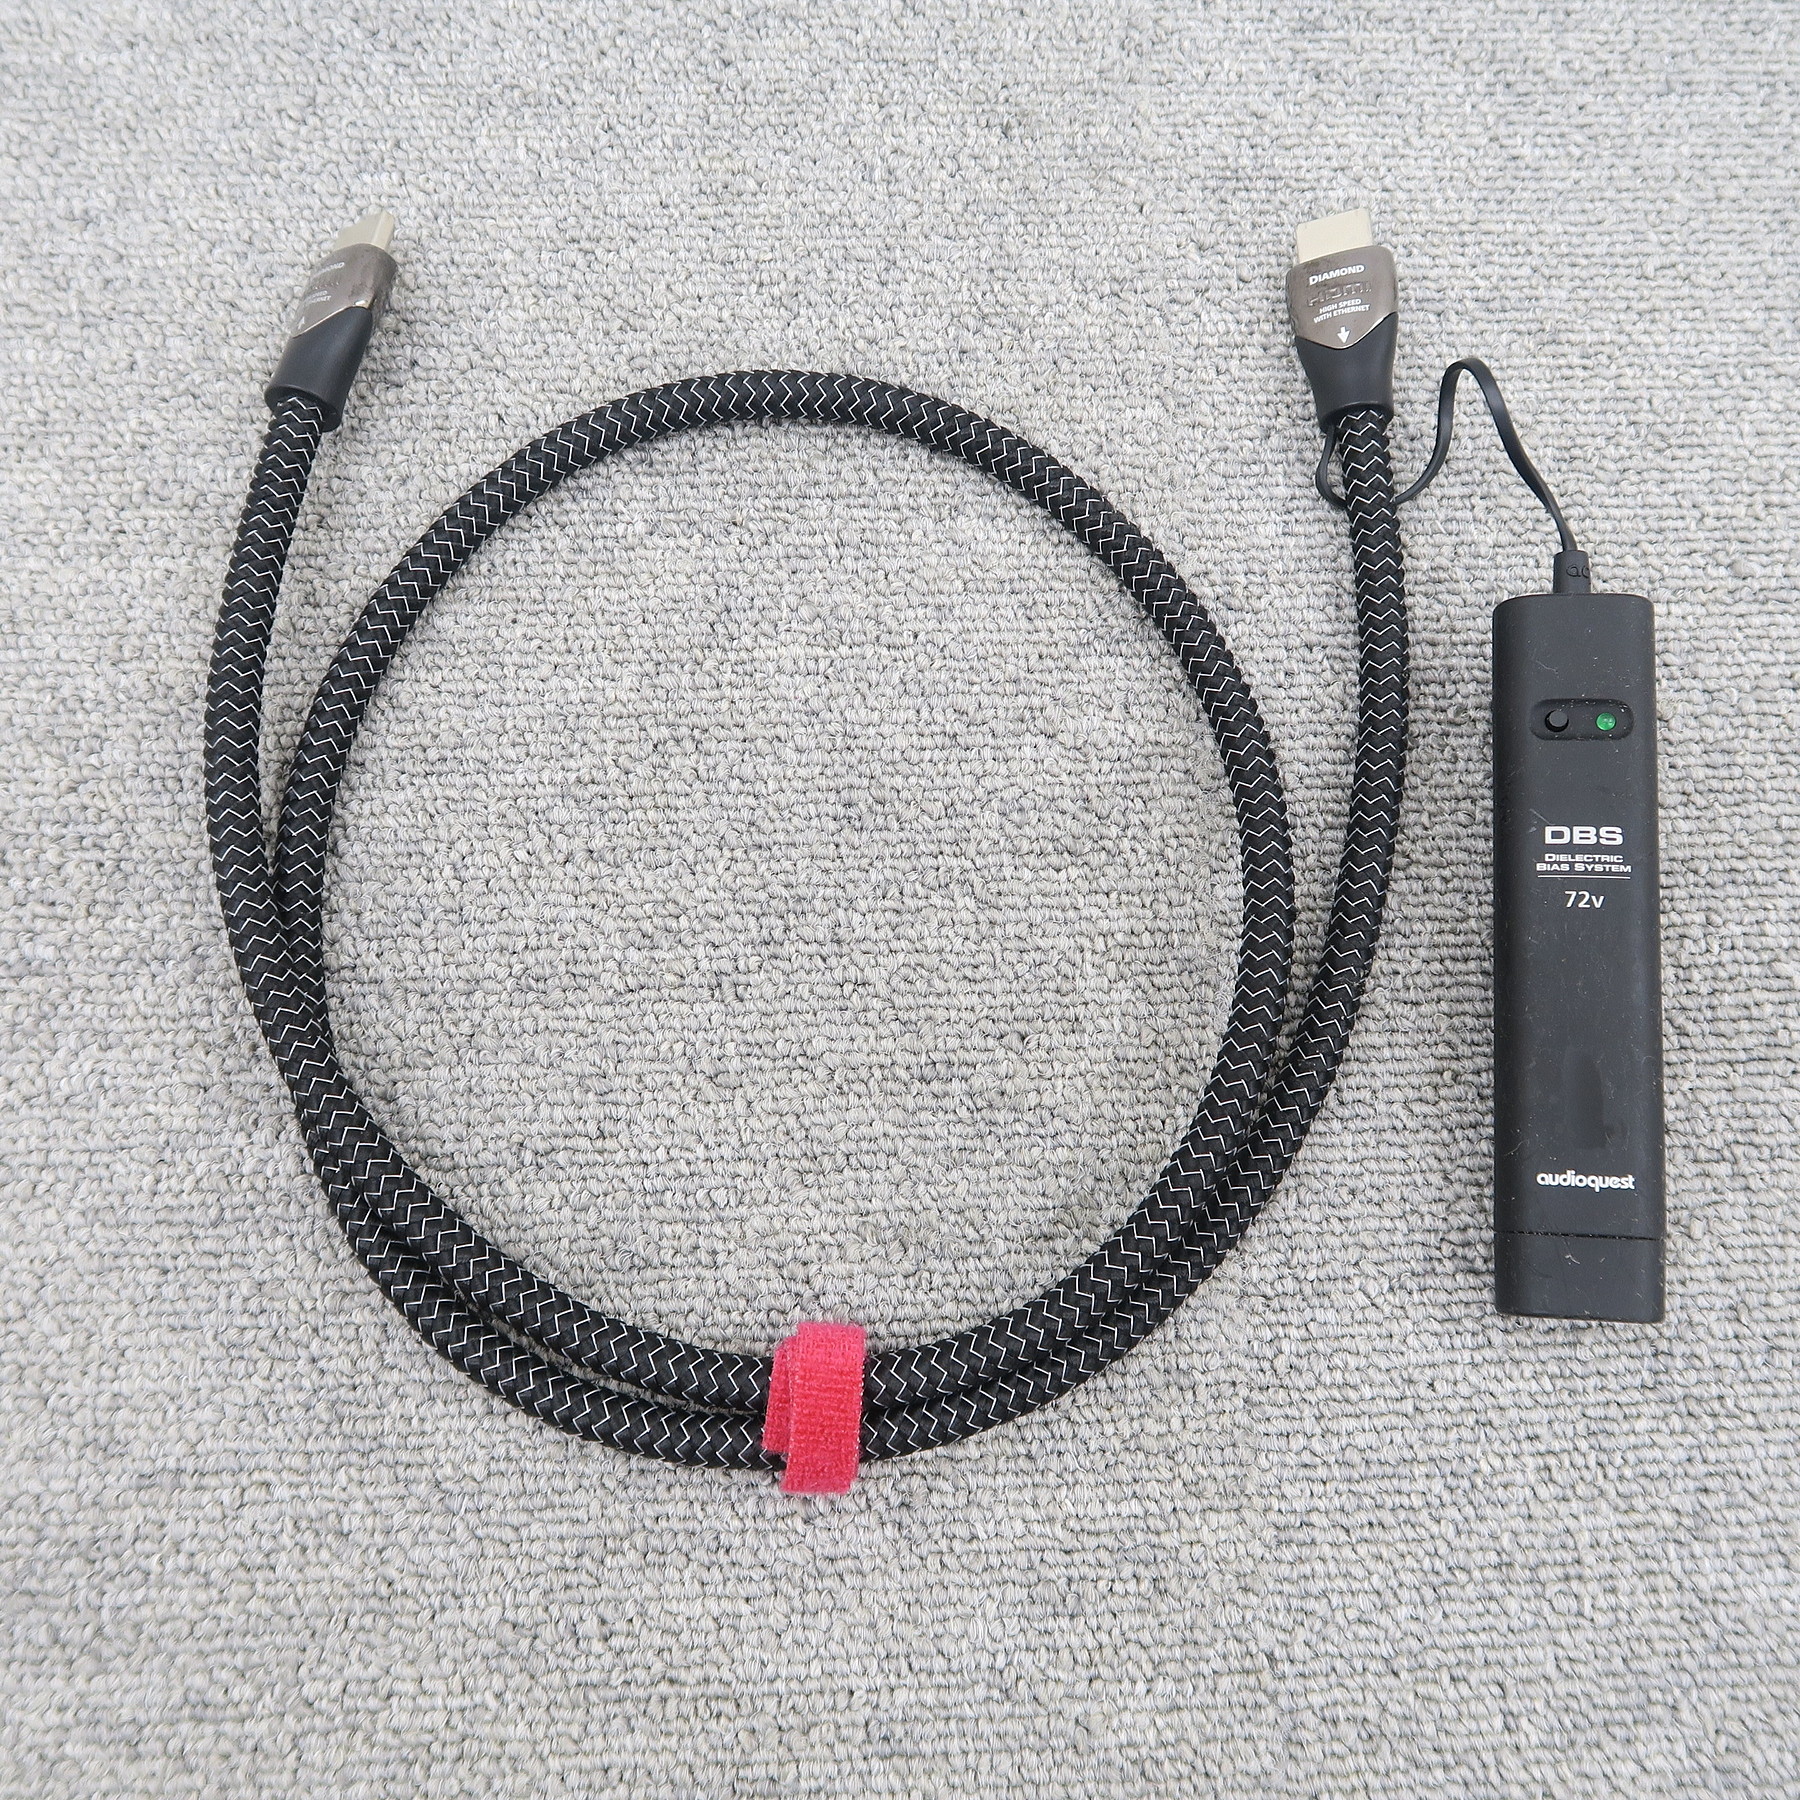 格安店 AudioQuest オーディオクエスト USB 2.0 DIAMOND 0.75m Type-A to Type-C  オーディオグレードUSBケーブル